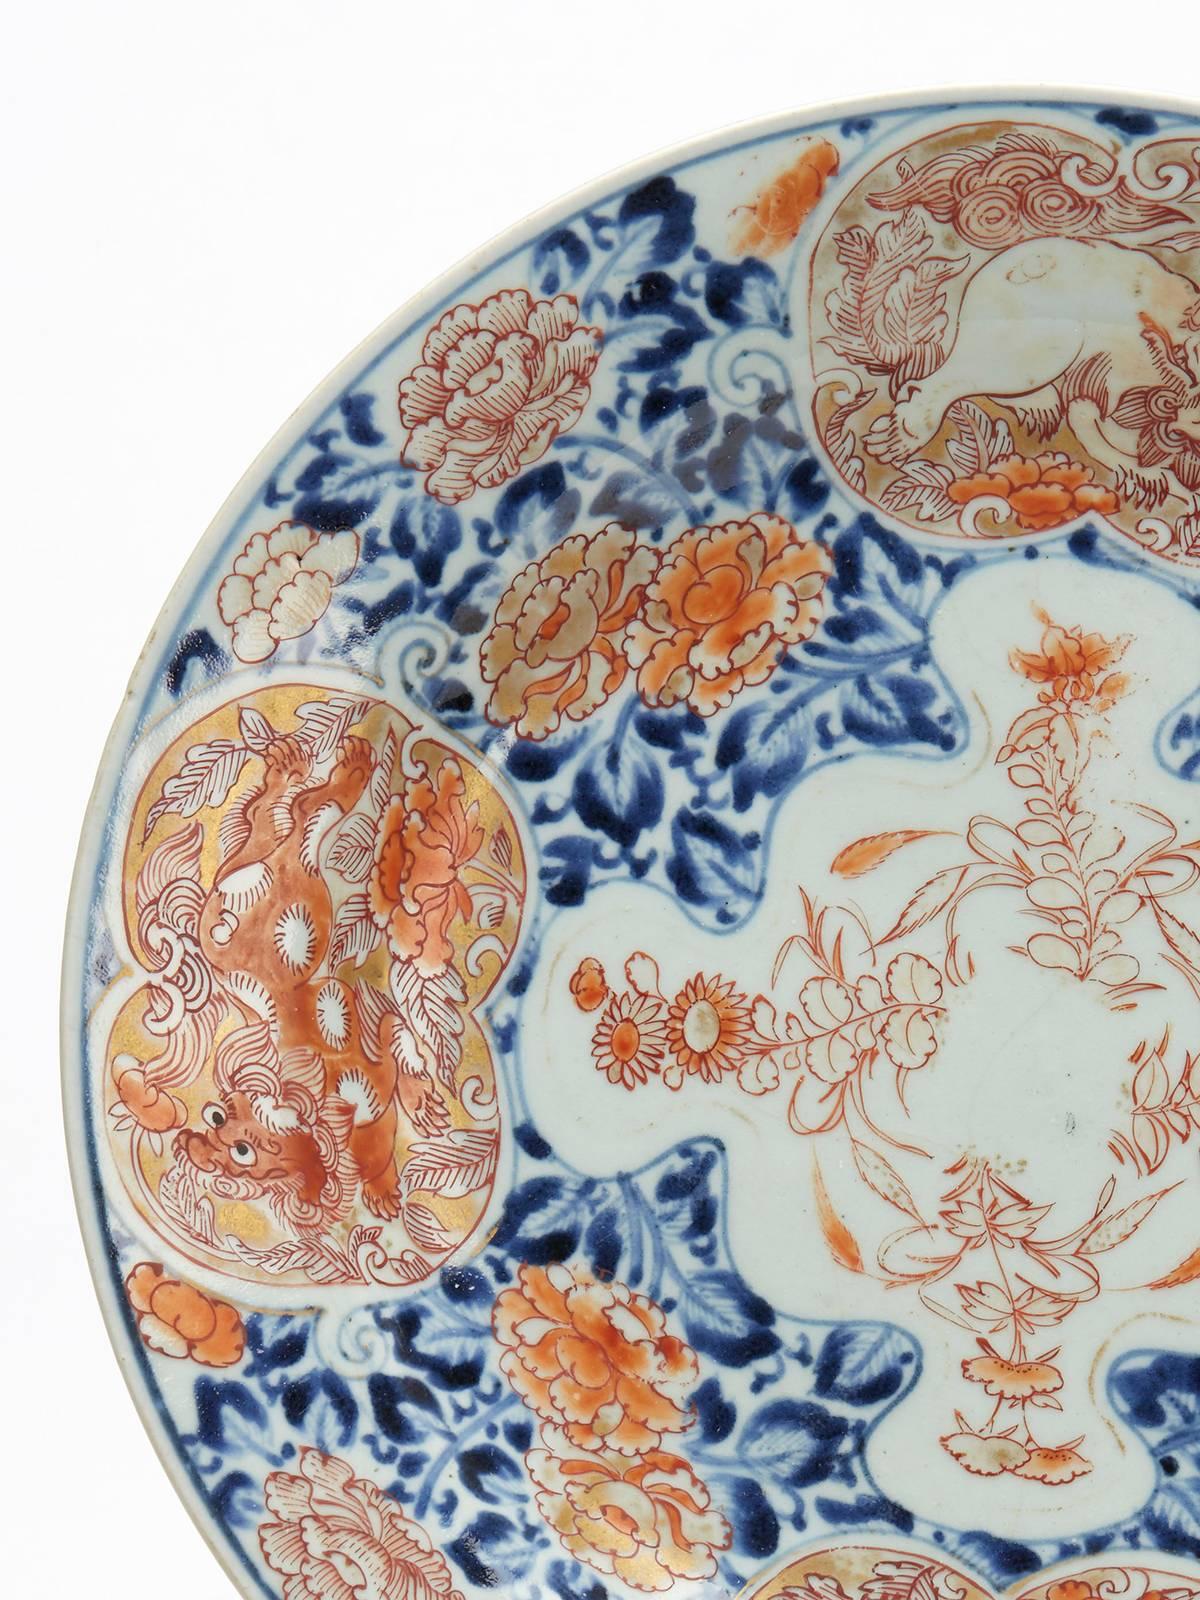 Eine japanische Porzellanschale aus der Meiji-Zeit, dekoriert im alten Imari-Stil mit Tafeln, die mythische Tiere zeigen. Die runde, flache Schale ist mit blauer Unterglasurmalerei und roter Übermalung mit Vergoldung verziert. Auf vier Feldern sind